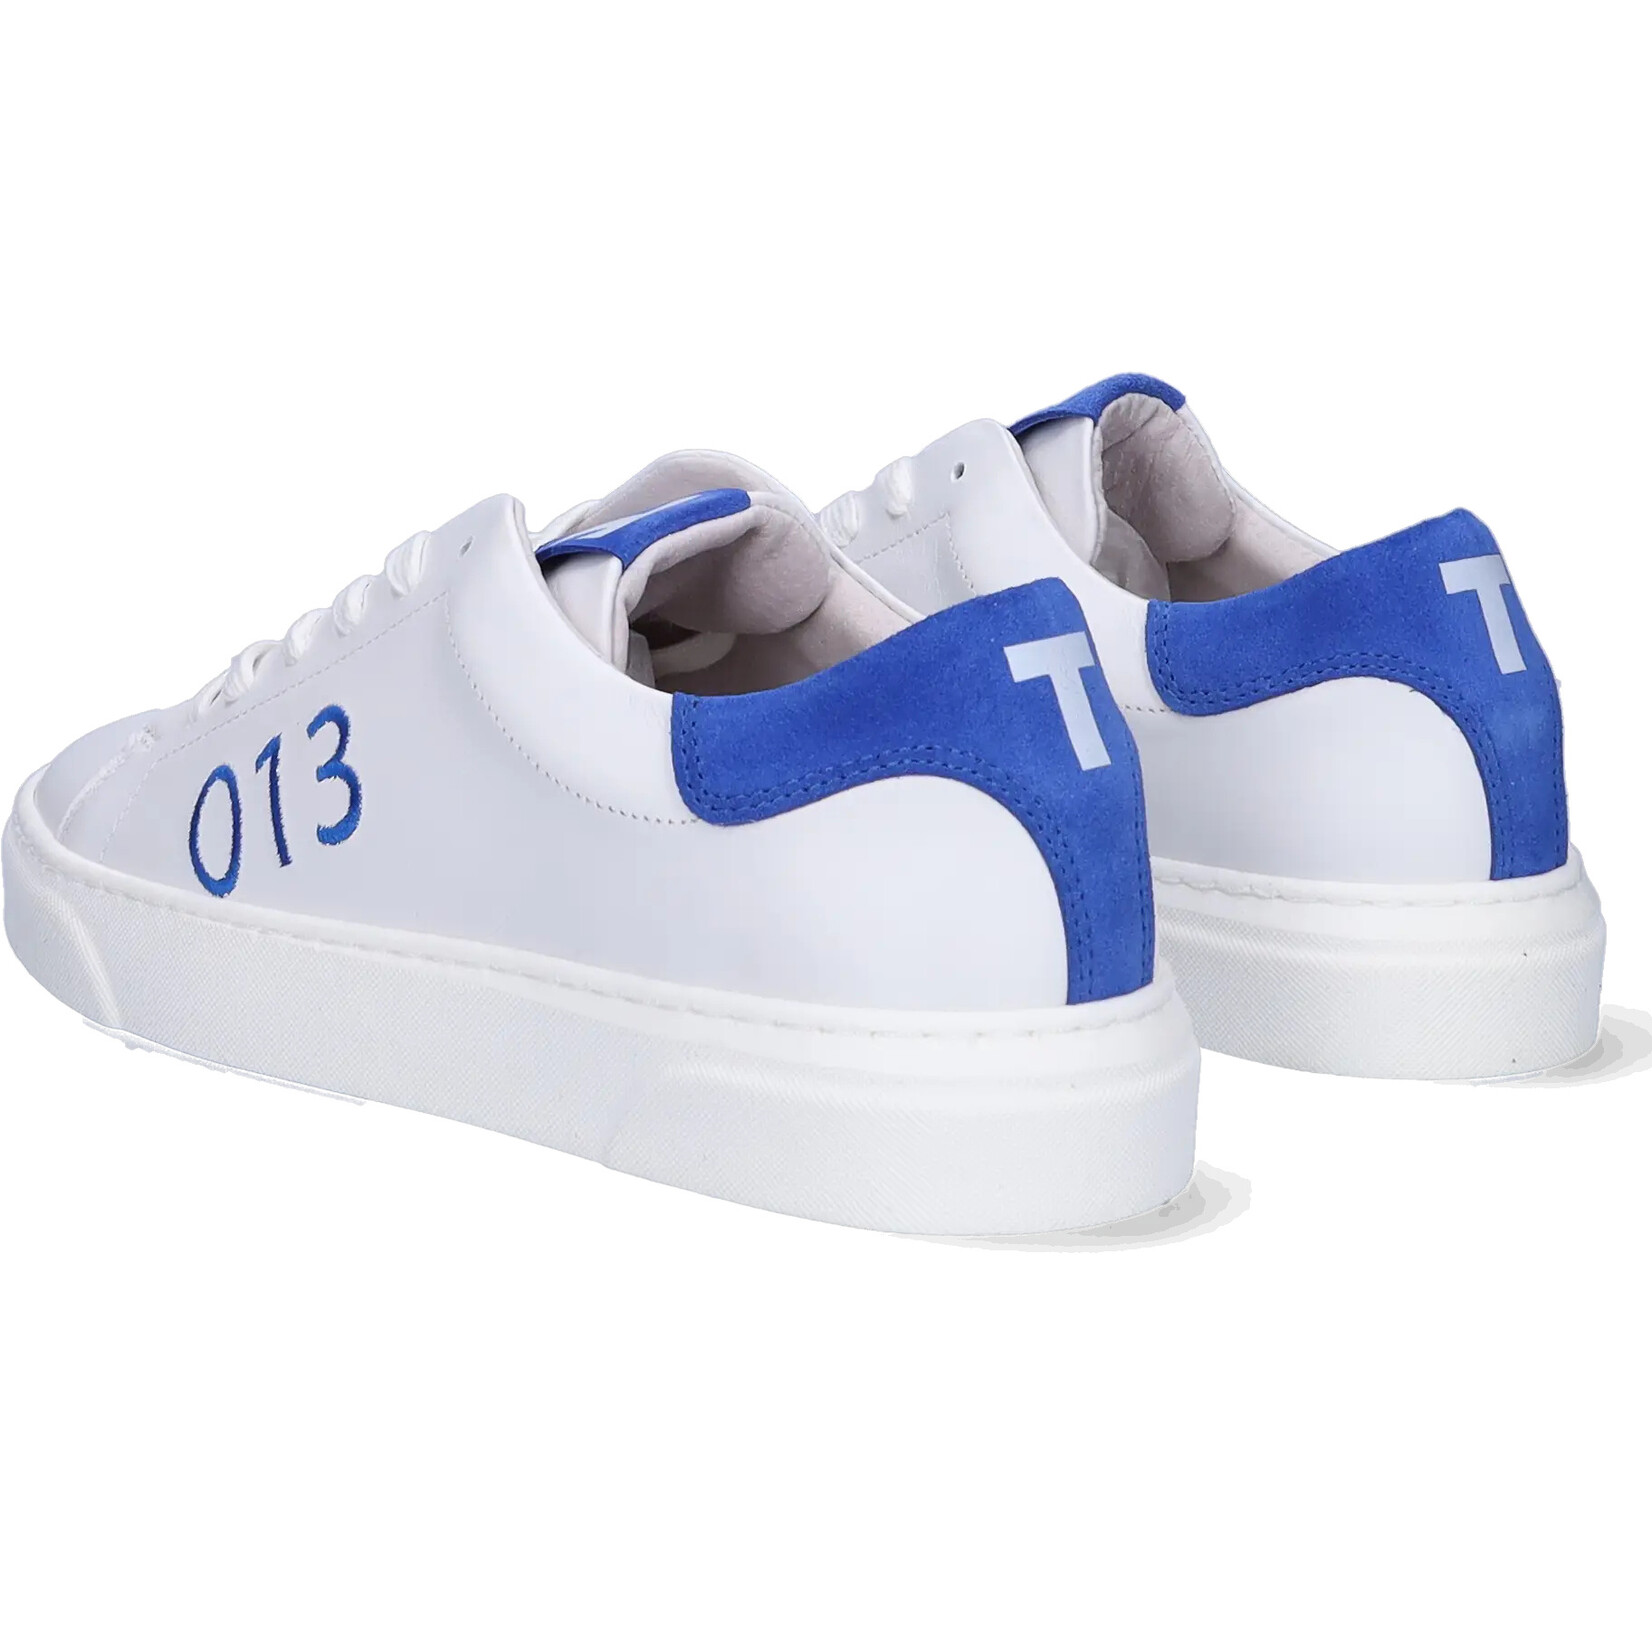 JJ Footwear Tilburg - White/Blue